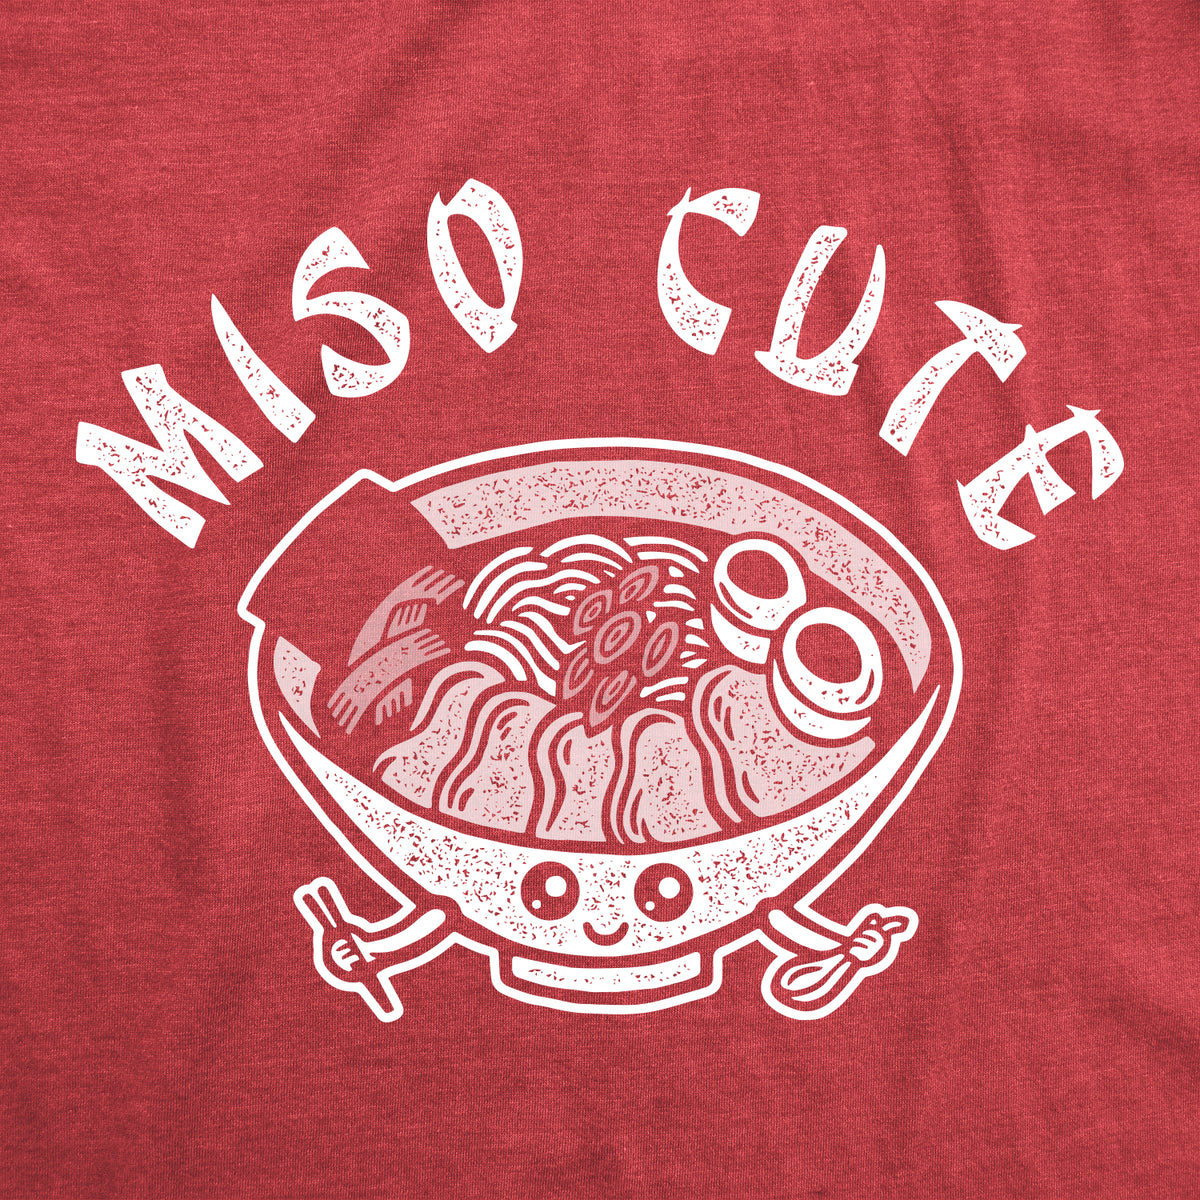 Miso Cute Dog Tee Dog Shirt